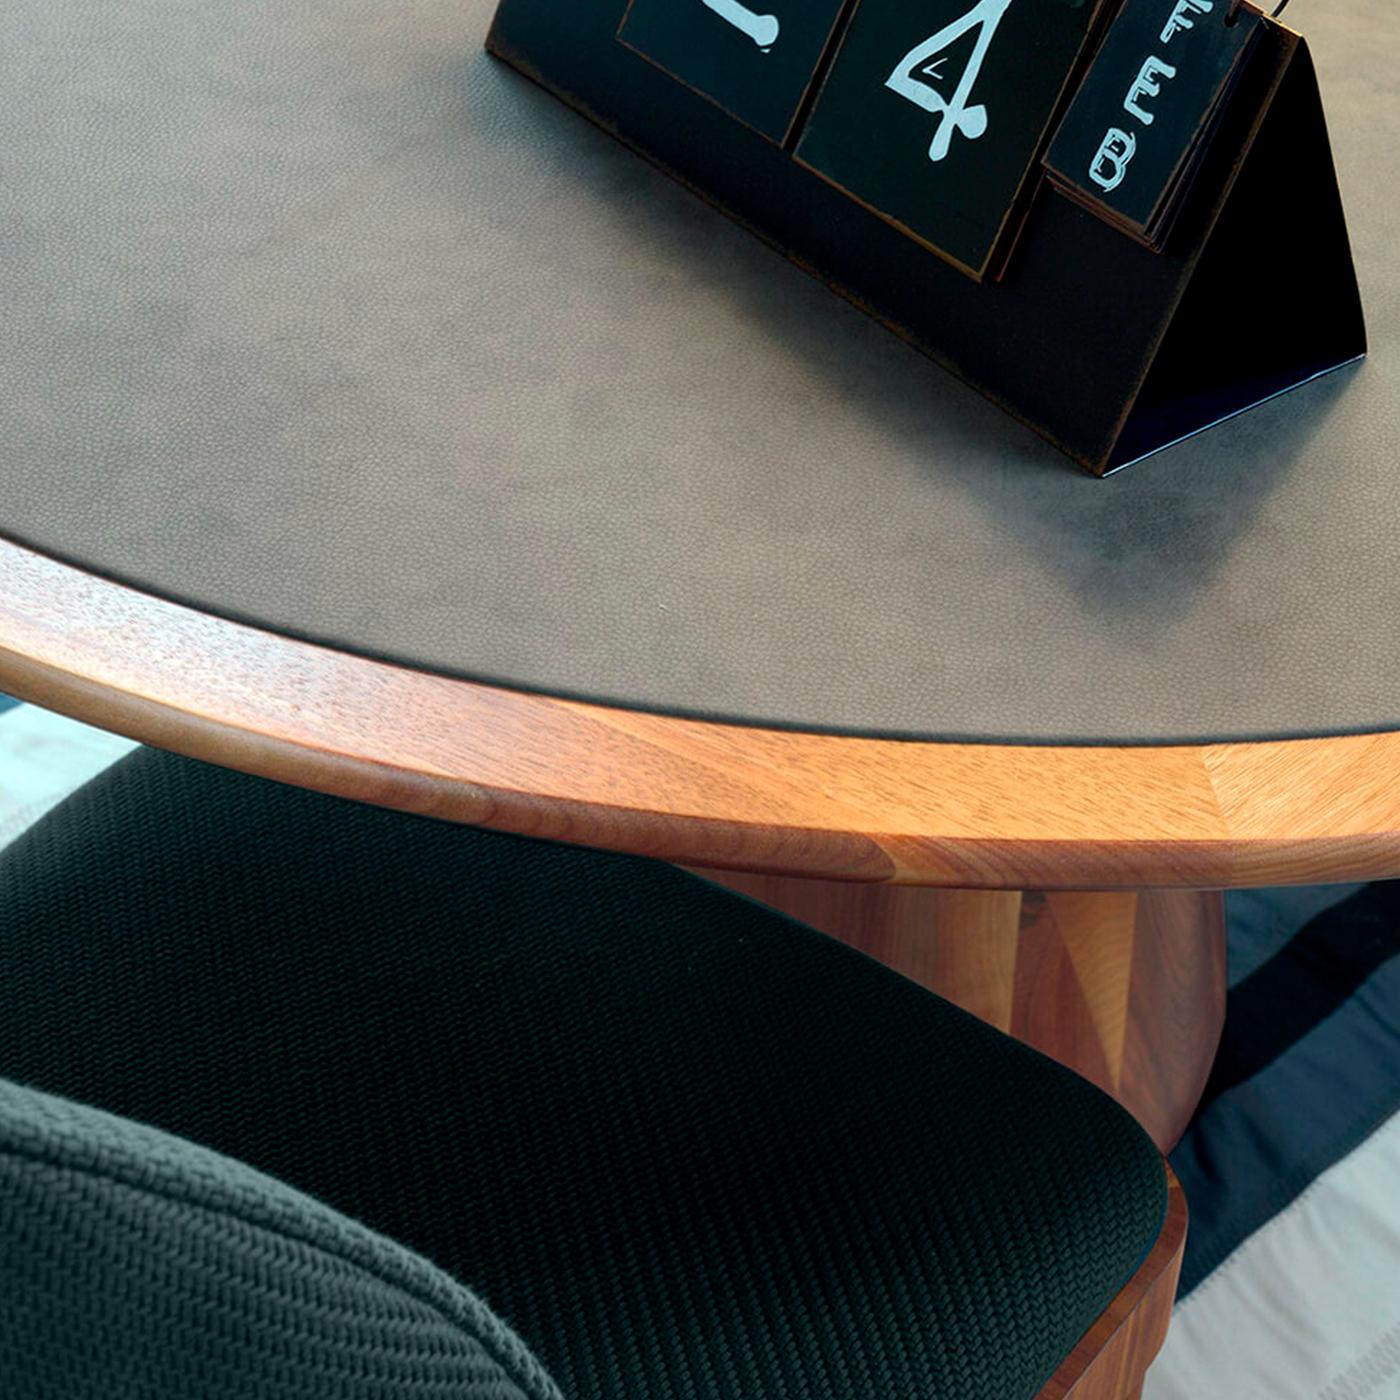 La vision des créations de Dale Italia transparaît à travers la table en bois massif Convivio. Le mélange de lignes contemporaines et classiques crée une pièce unique et intemporelle. Cette table ronde est disponible en deux variantes : entièrement